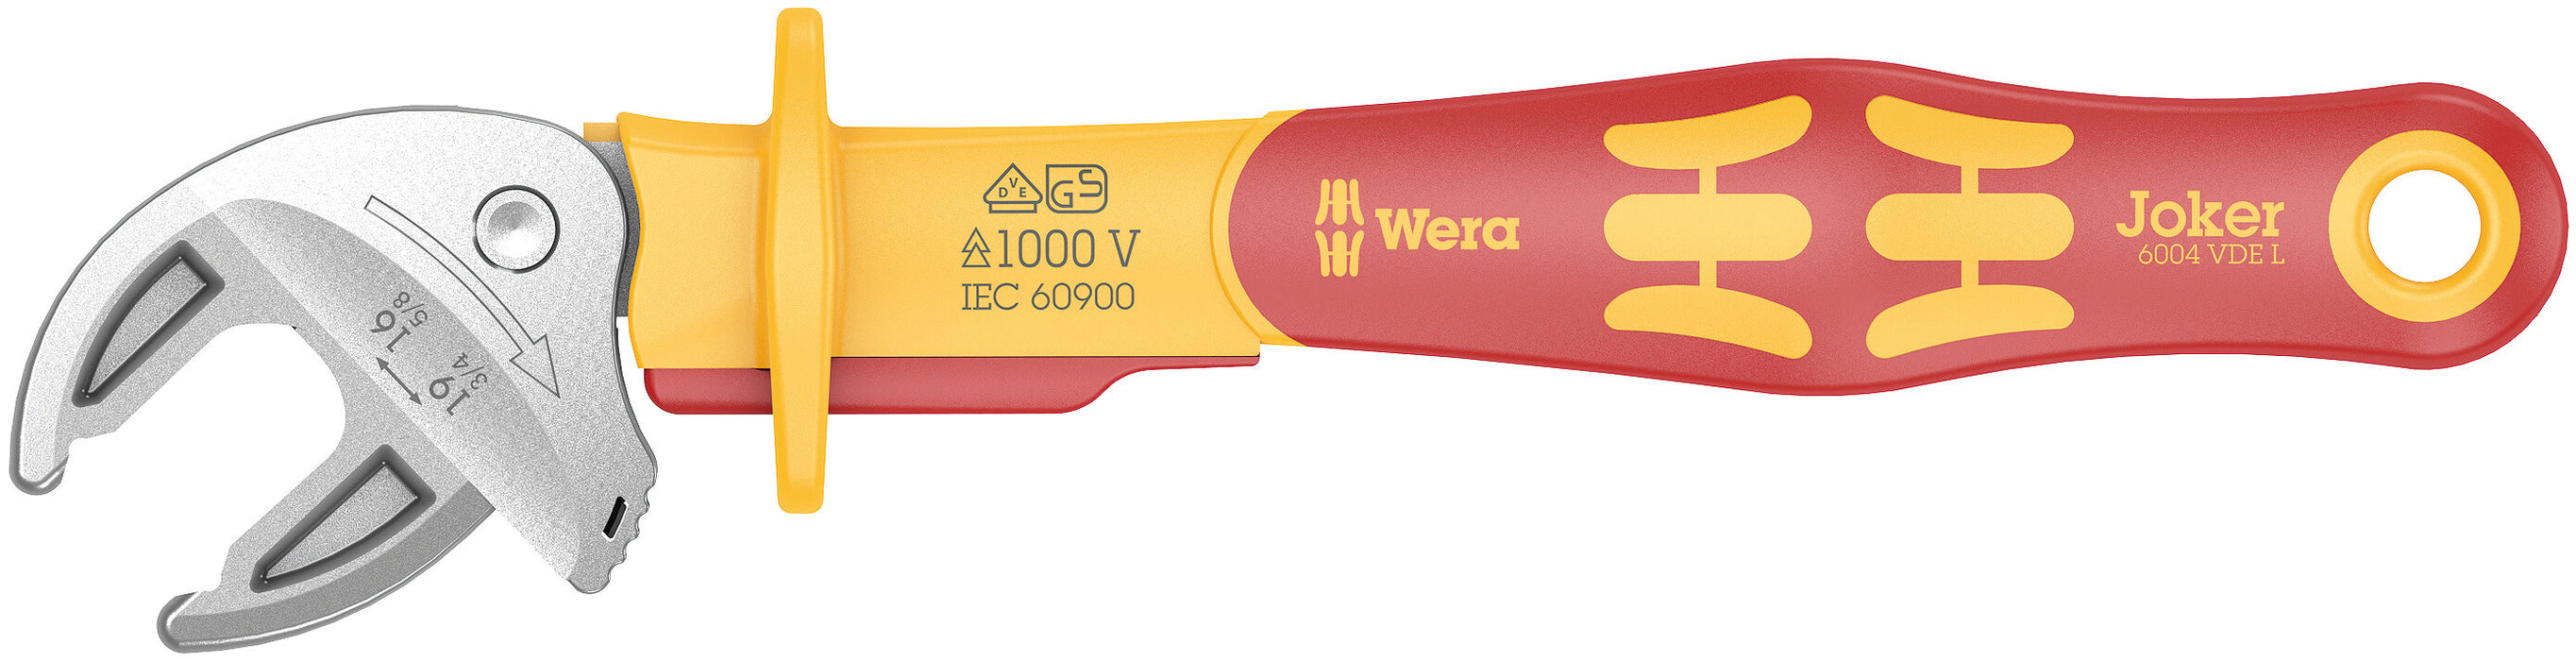 Wera 6004 Joker VDE L VDE izolirani samonastavljivi ključ, 16-19 x 5/8-3/4" x 226 mm